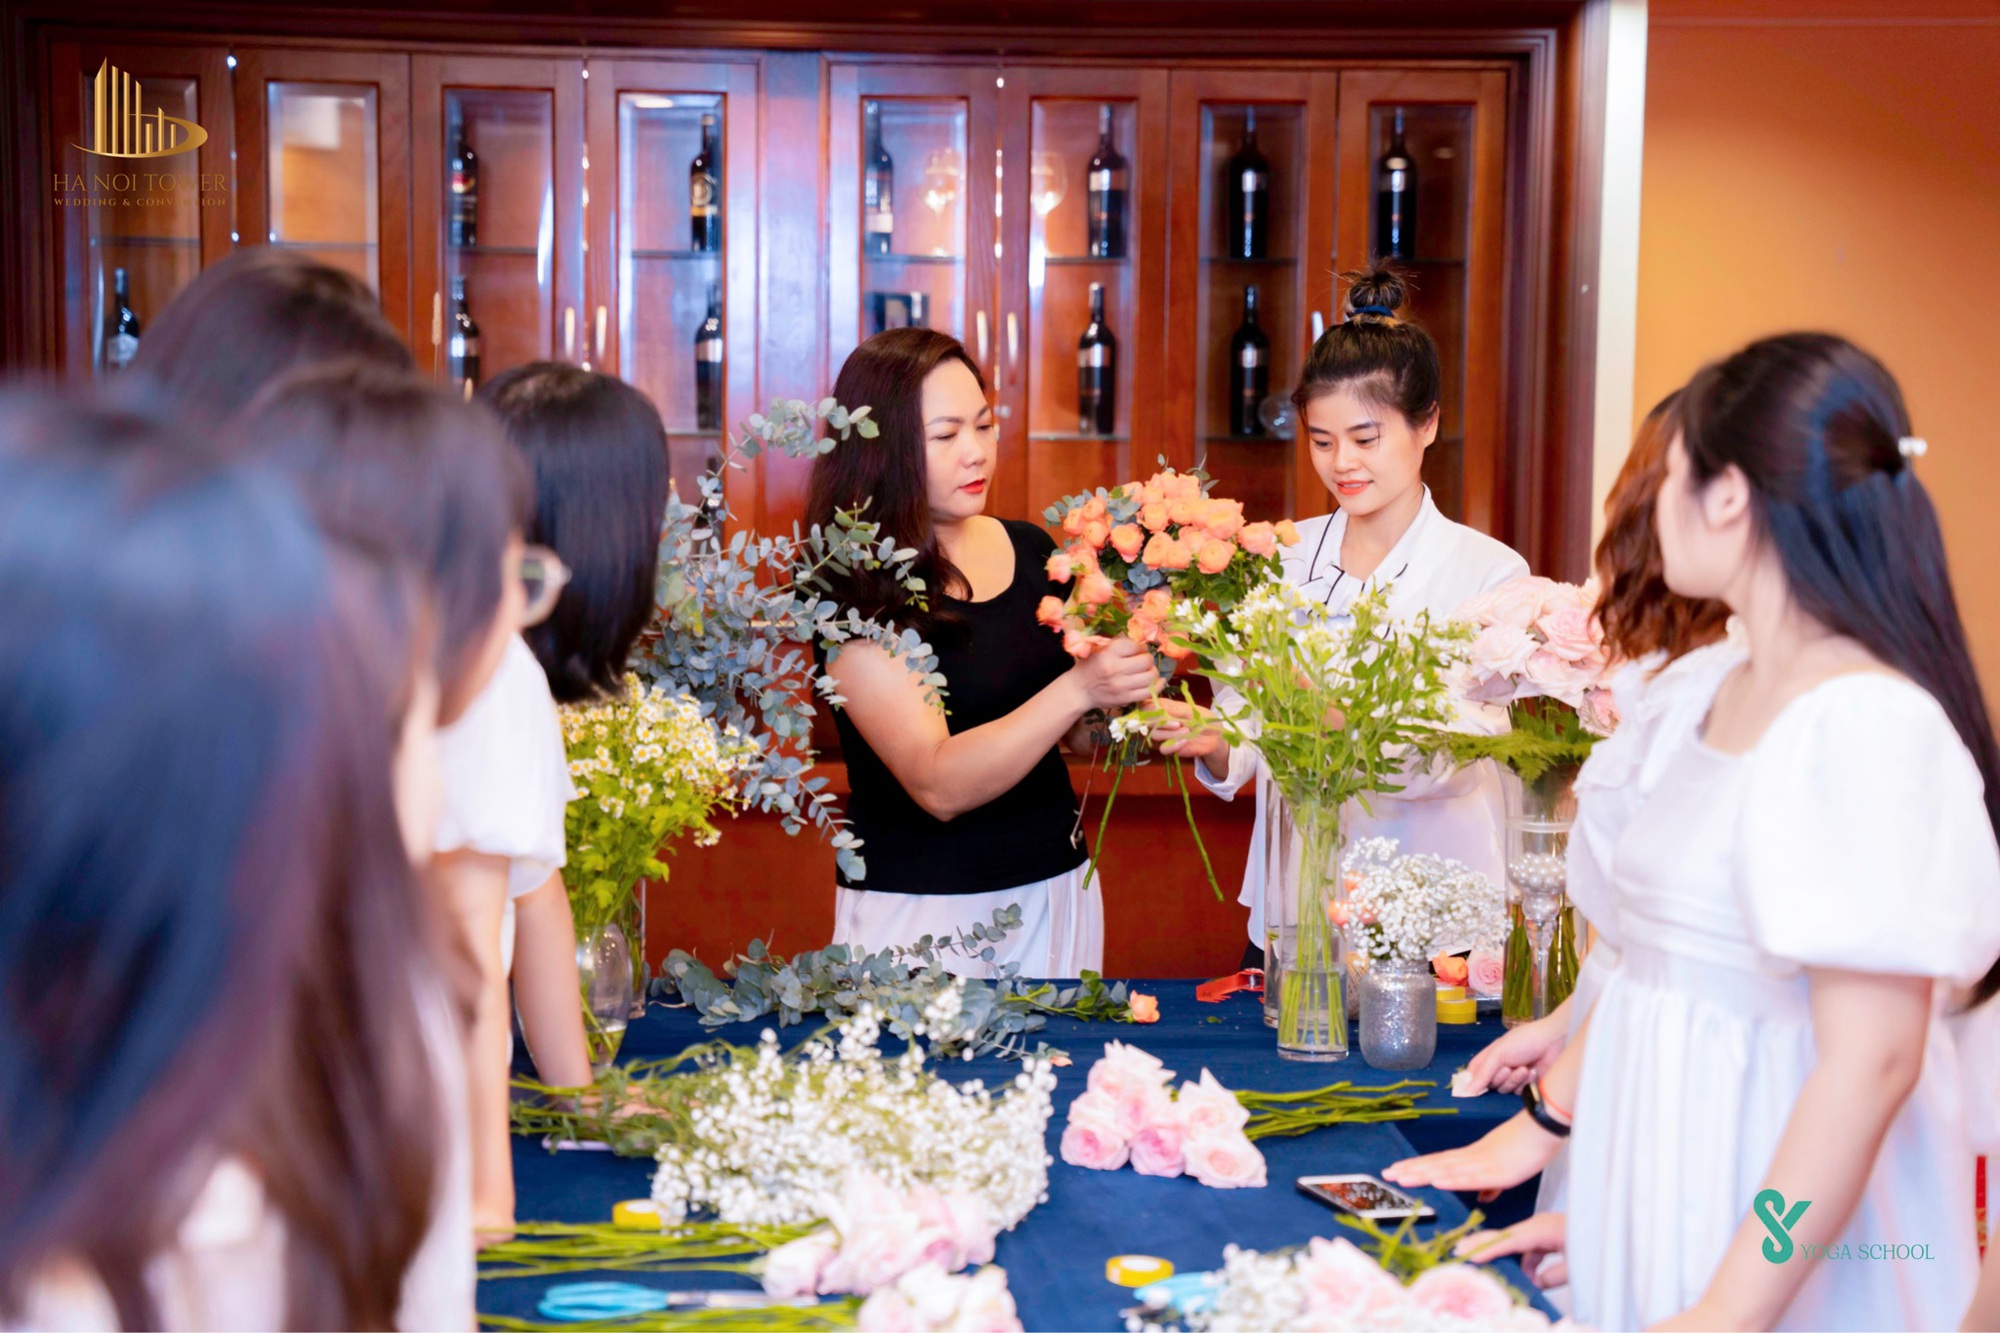 Khám phá workshop kết hoa cưới cực đặc biệt dành cho các cặp đôi tại Hanoi Tower - Ảnh 5.